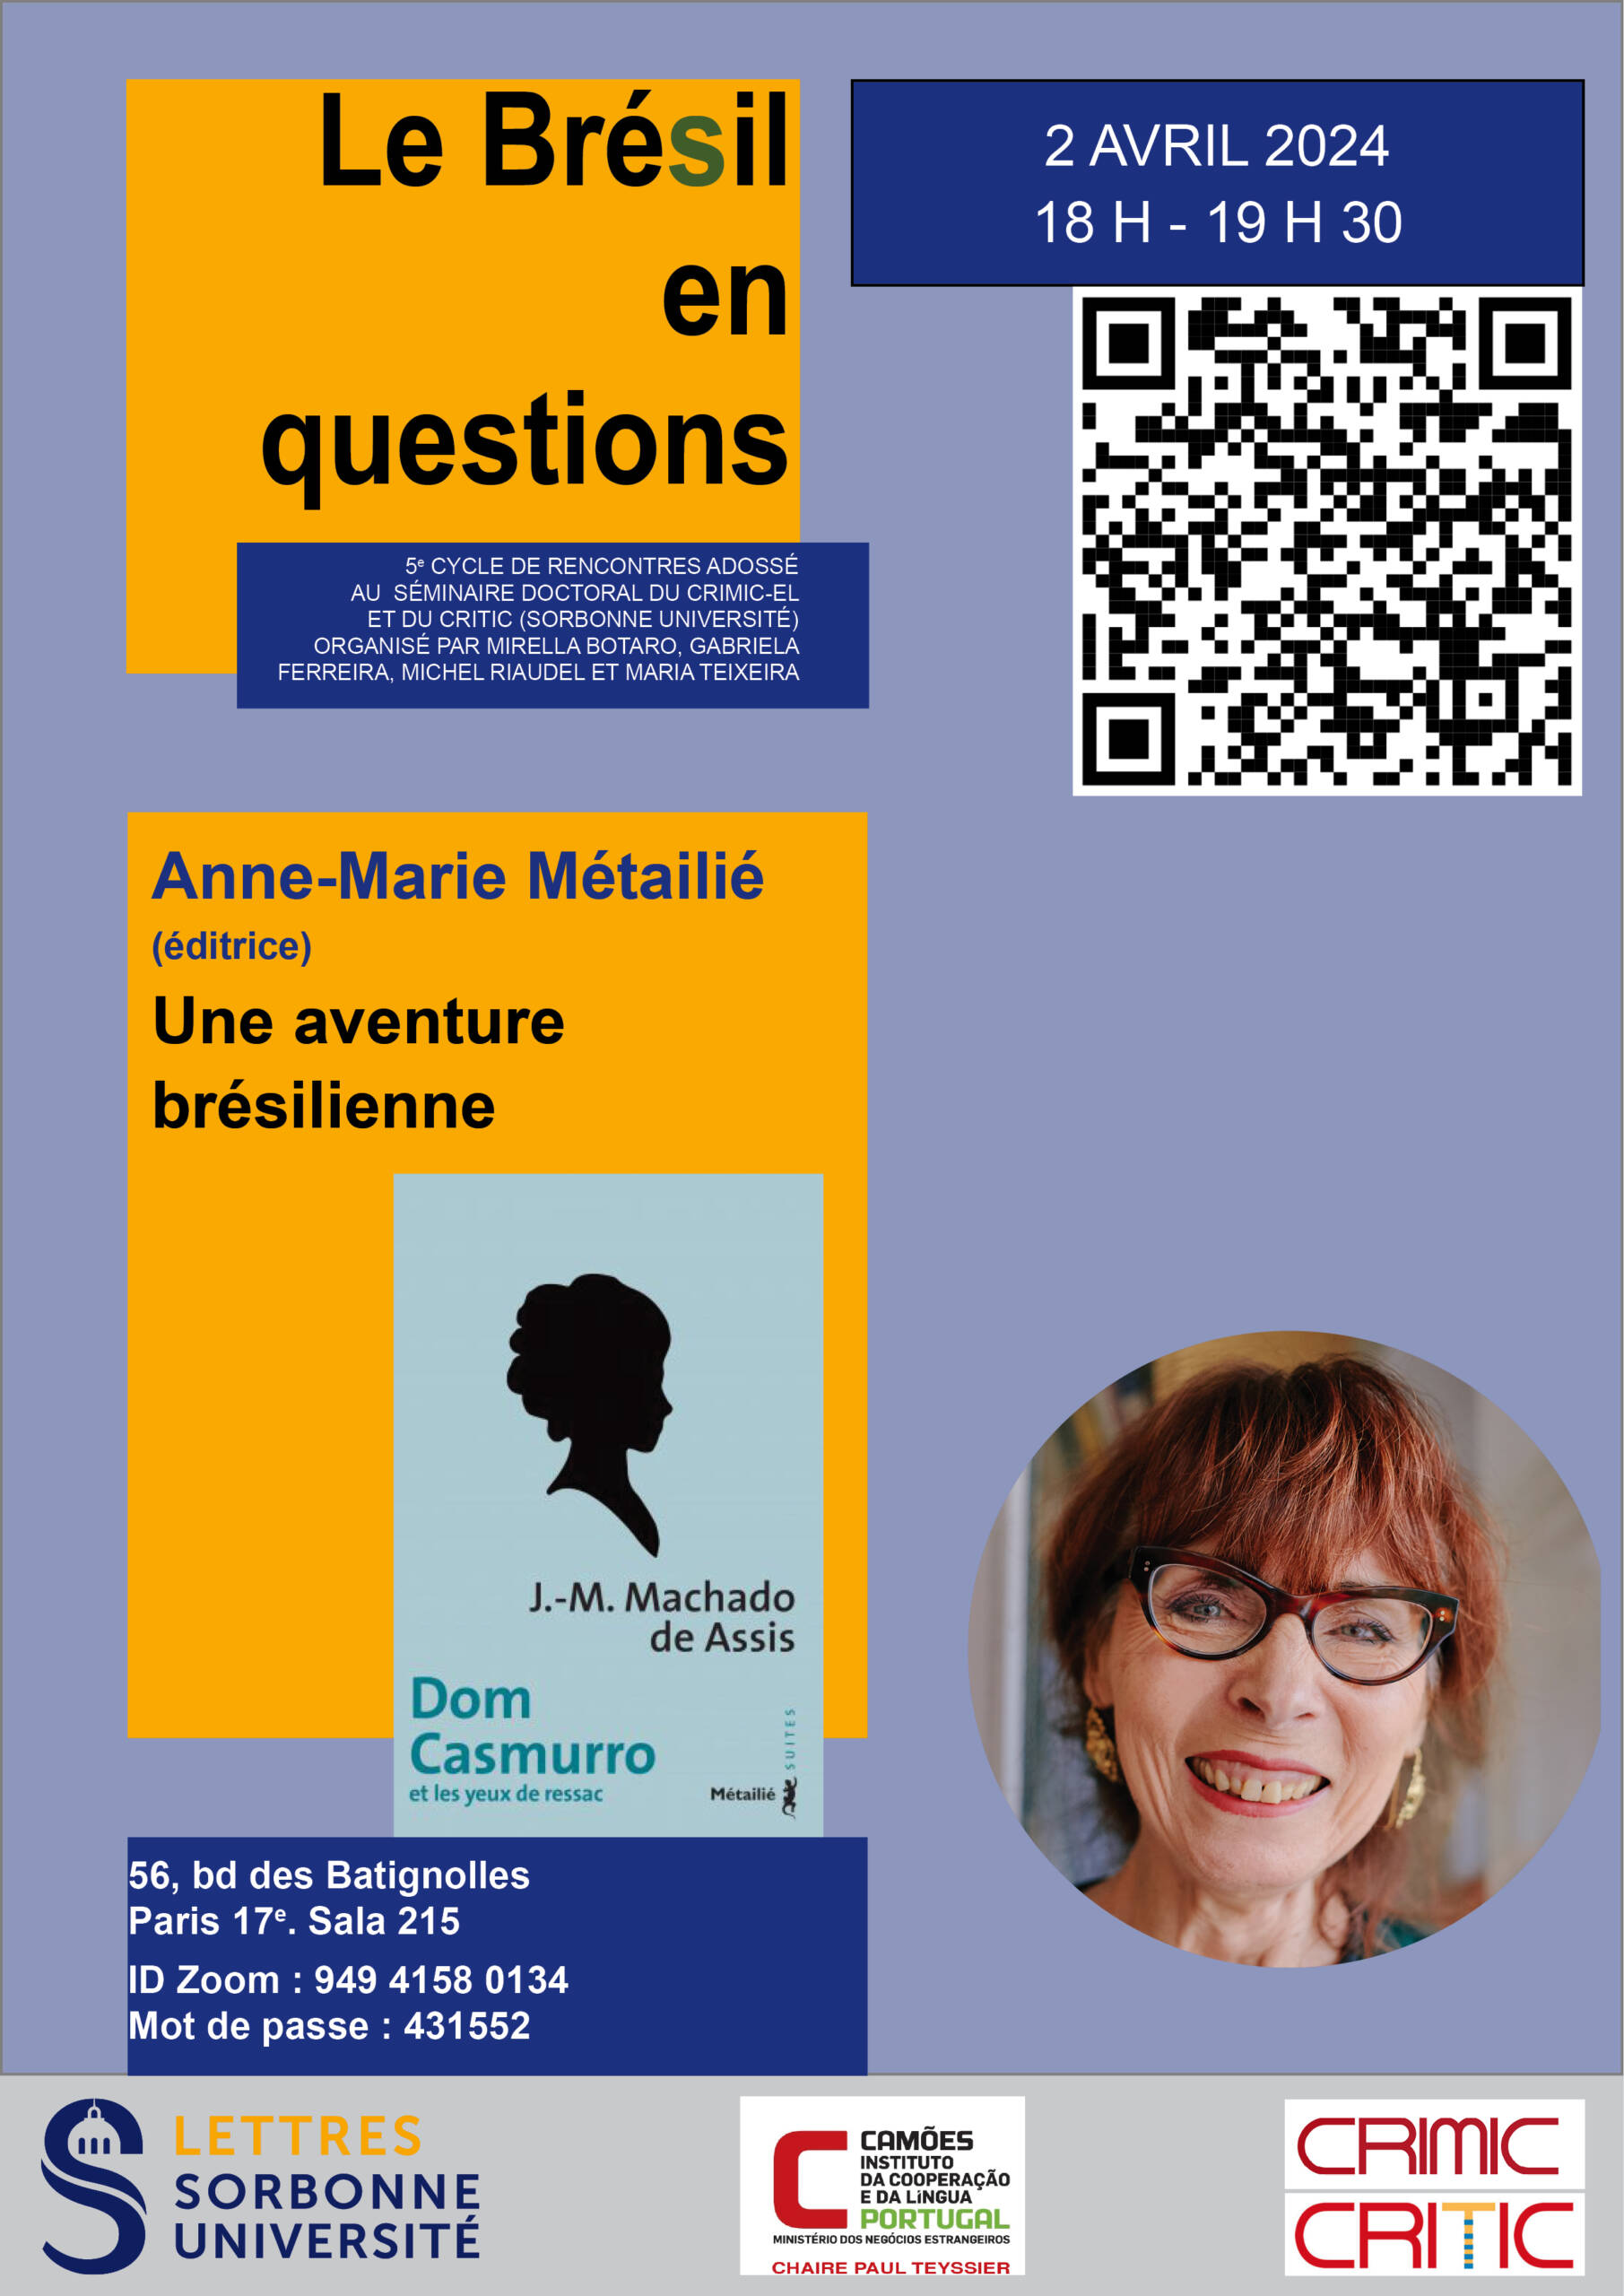 Le Brésil en Questions : rencontre avec l'éditrice Anne-Marie Métailié